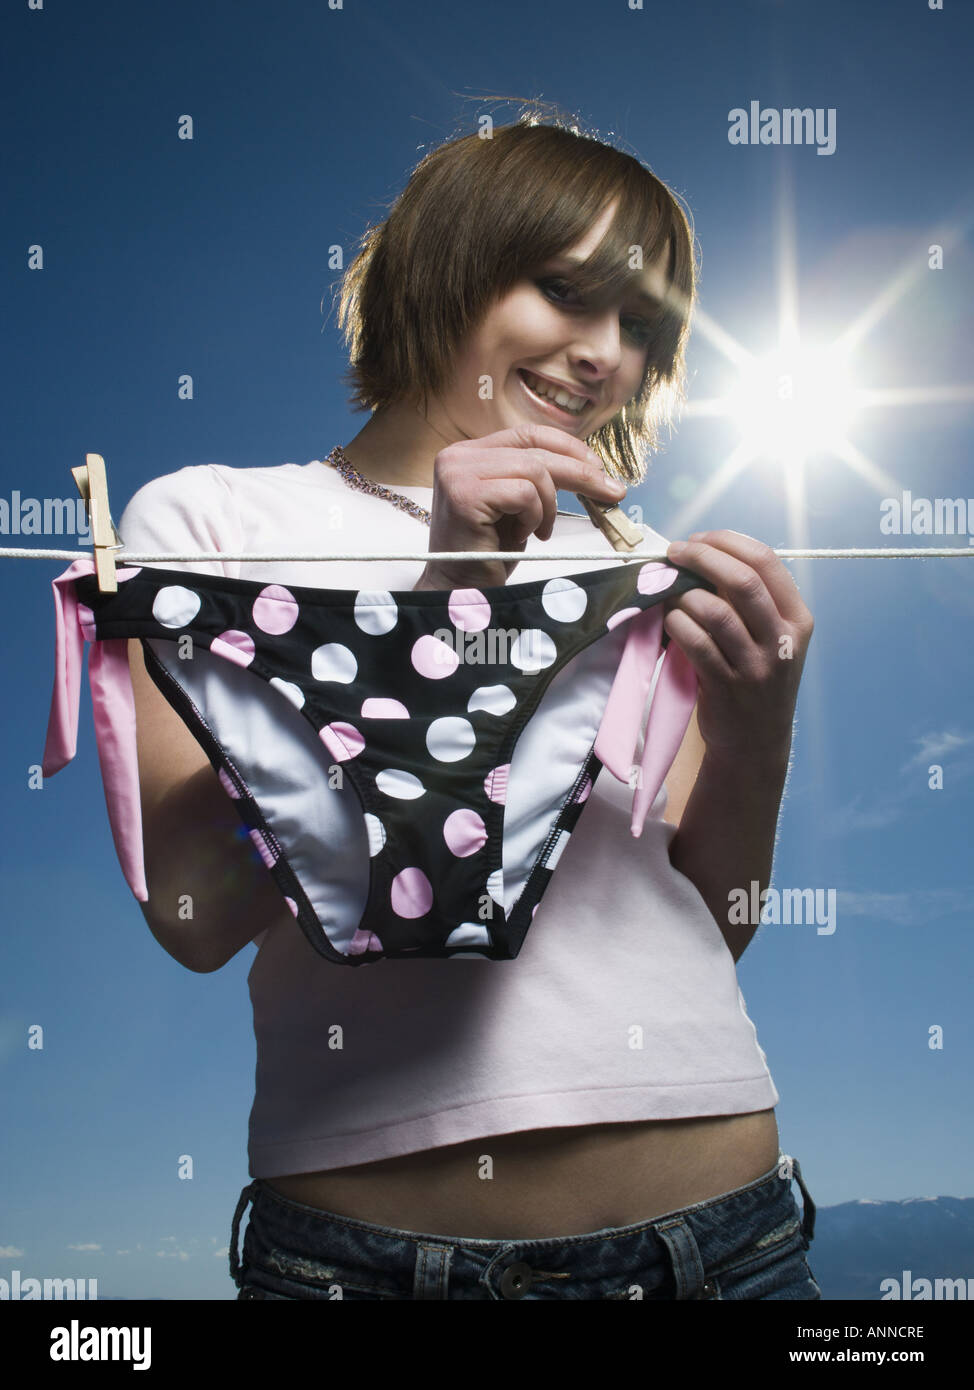 Niedrigen Winkel Ansicht eines Mädchens ein Bikiniunterteil auf einer Wäscheleine trocknen Stockfoto